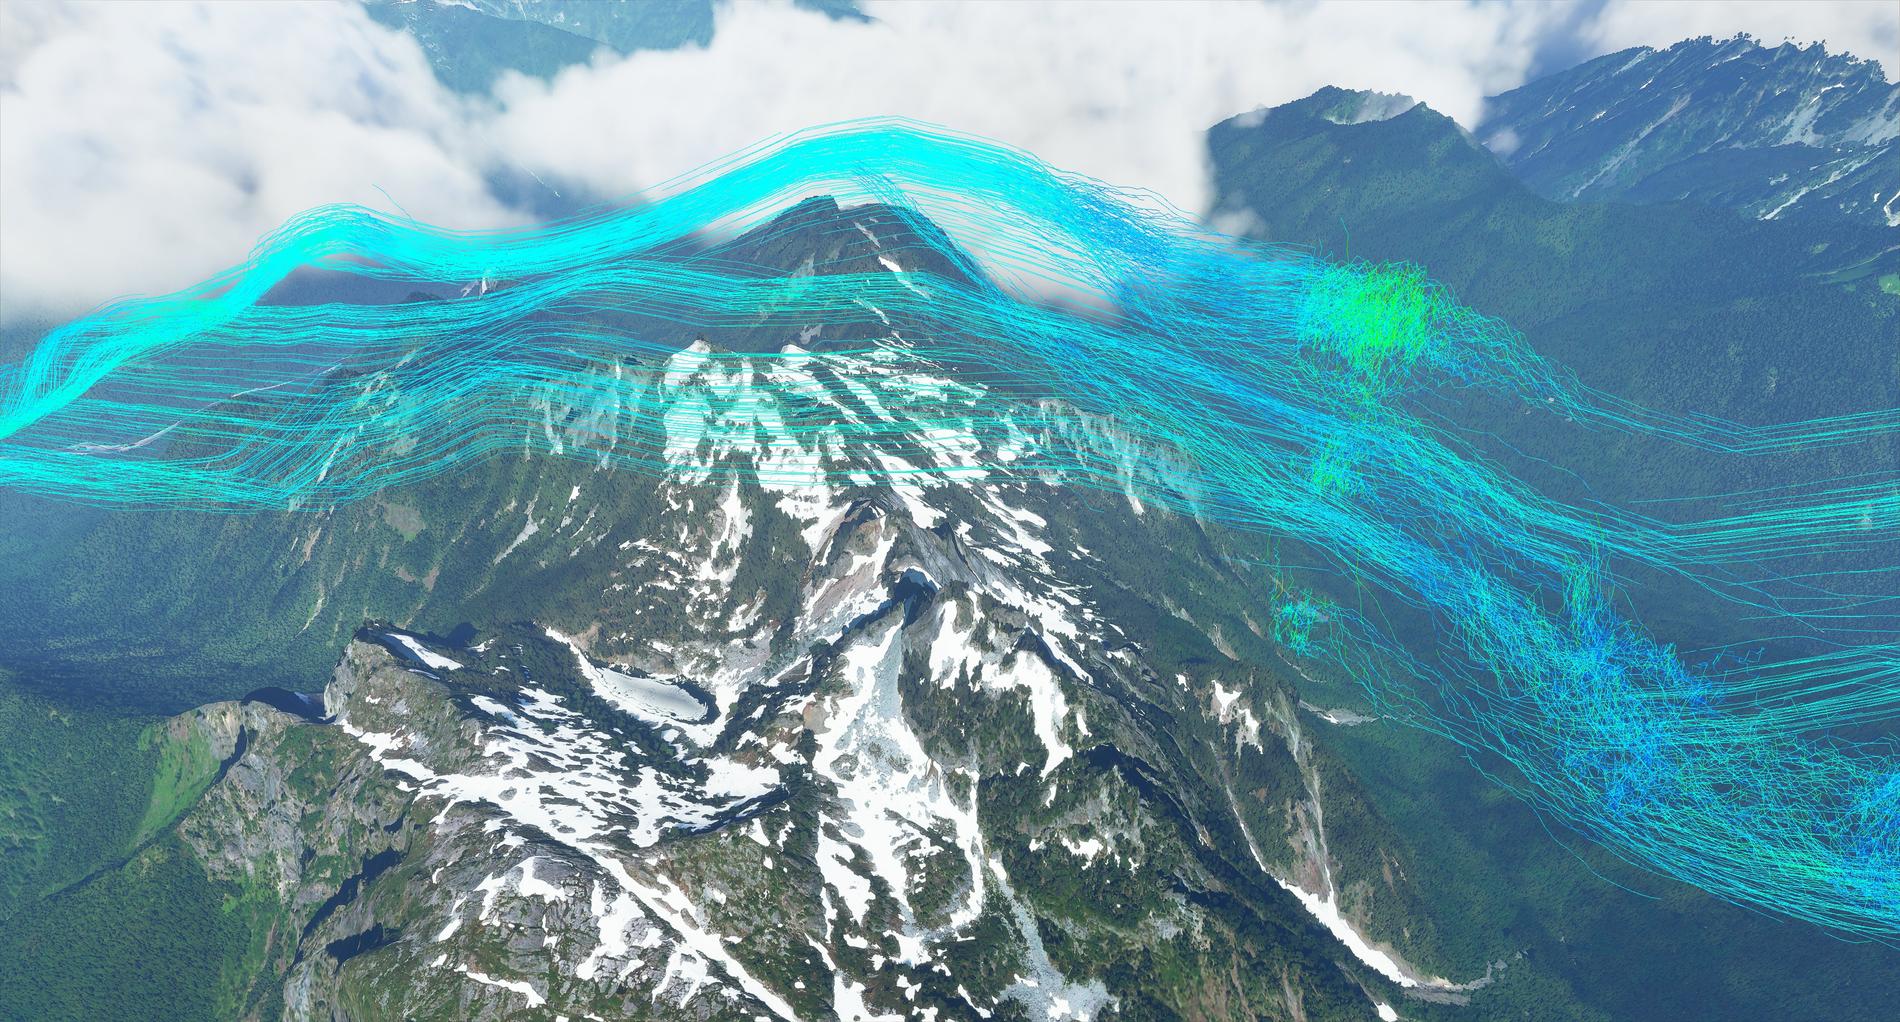 Vindarna reagerar med olika objekt i världen, till exempel trycks luftmassan upp av bergskammar som här på bilden. De skapar också vågor av olika storlek på vattnet. Pressbild.